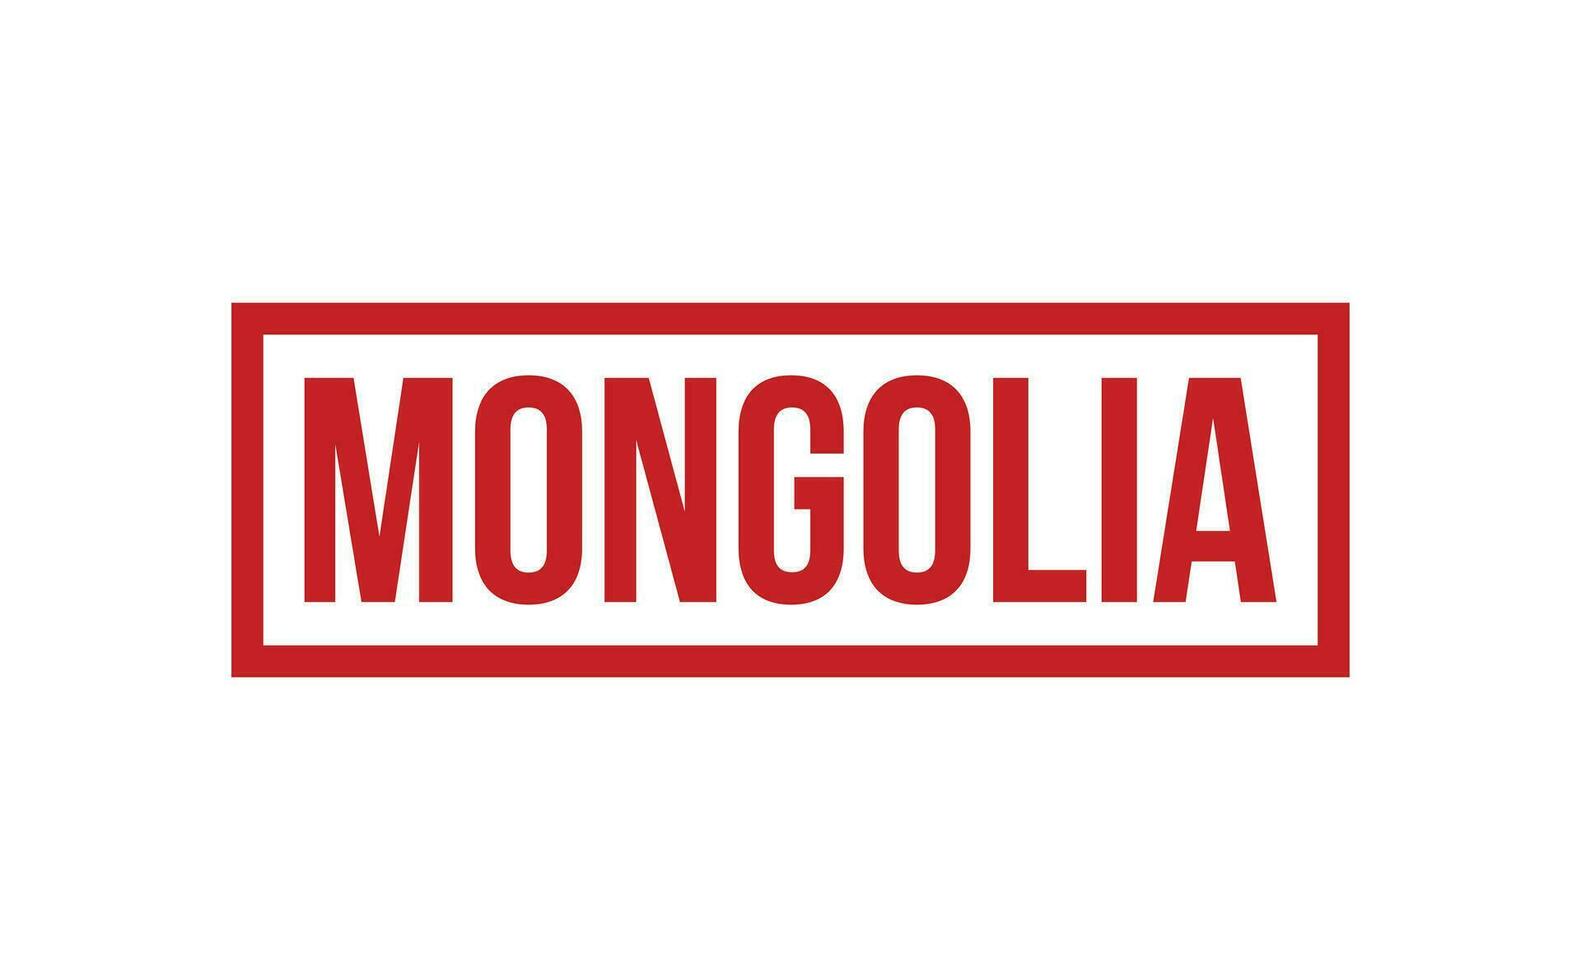 Mongolia caucho sello sello vector